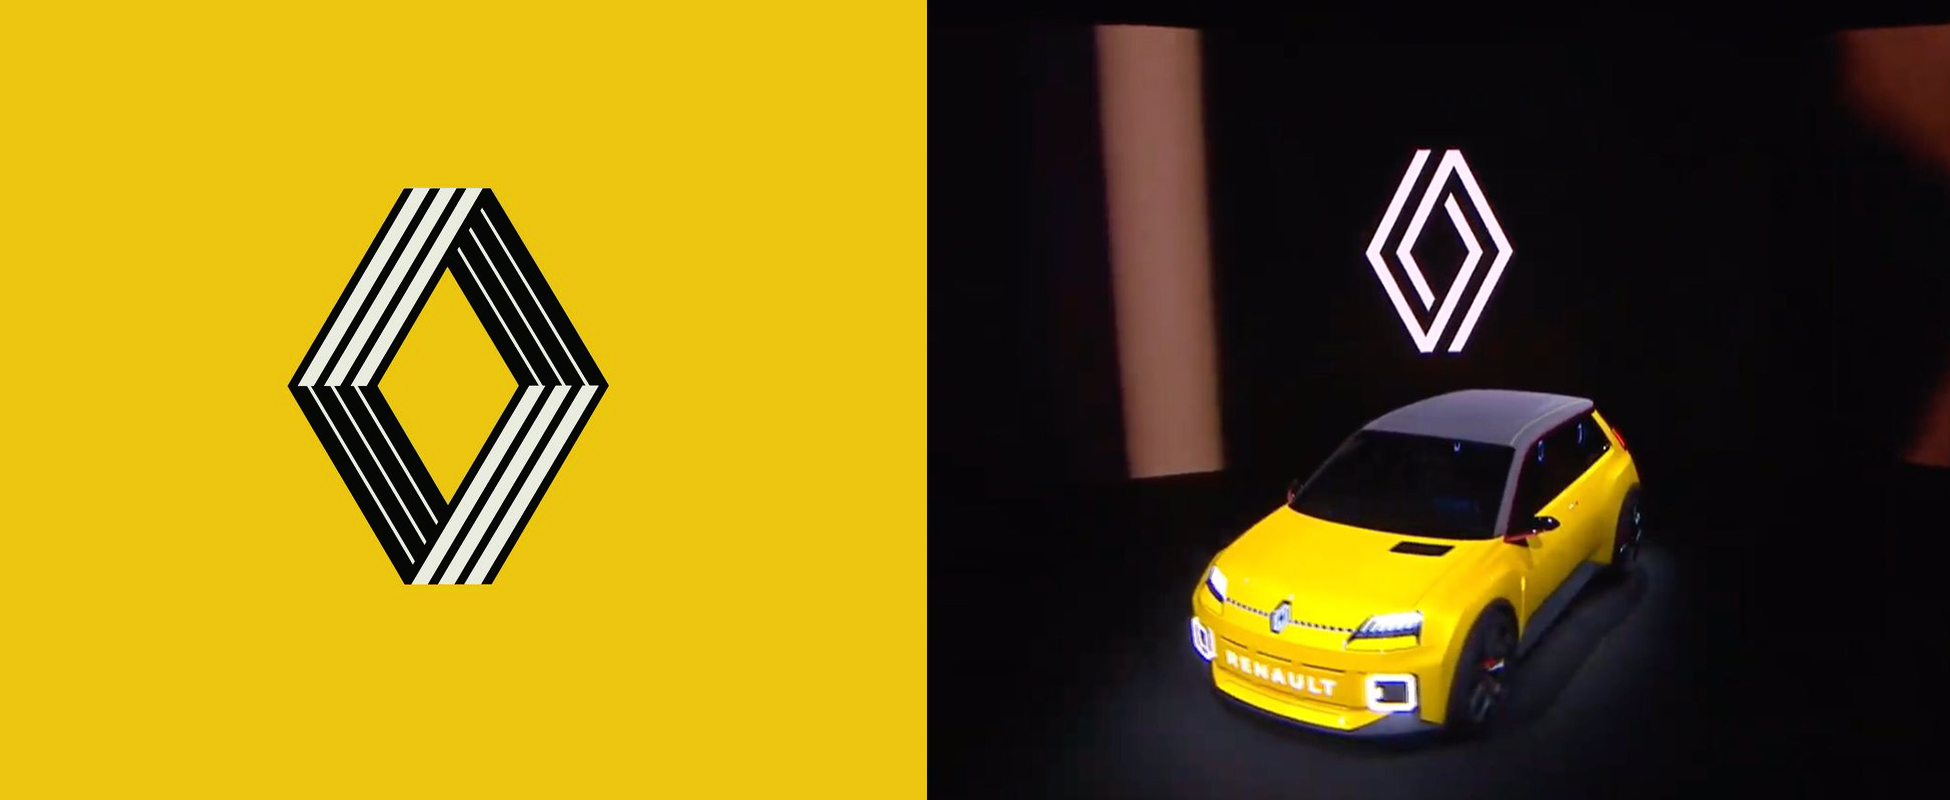 Un nouveau style pour Renault avec un nouveau logo